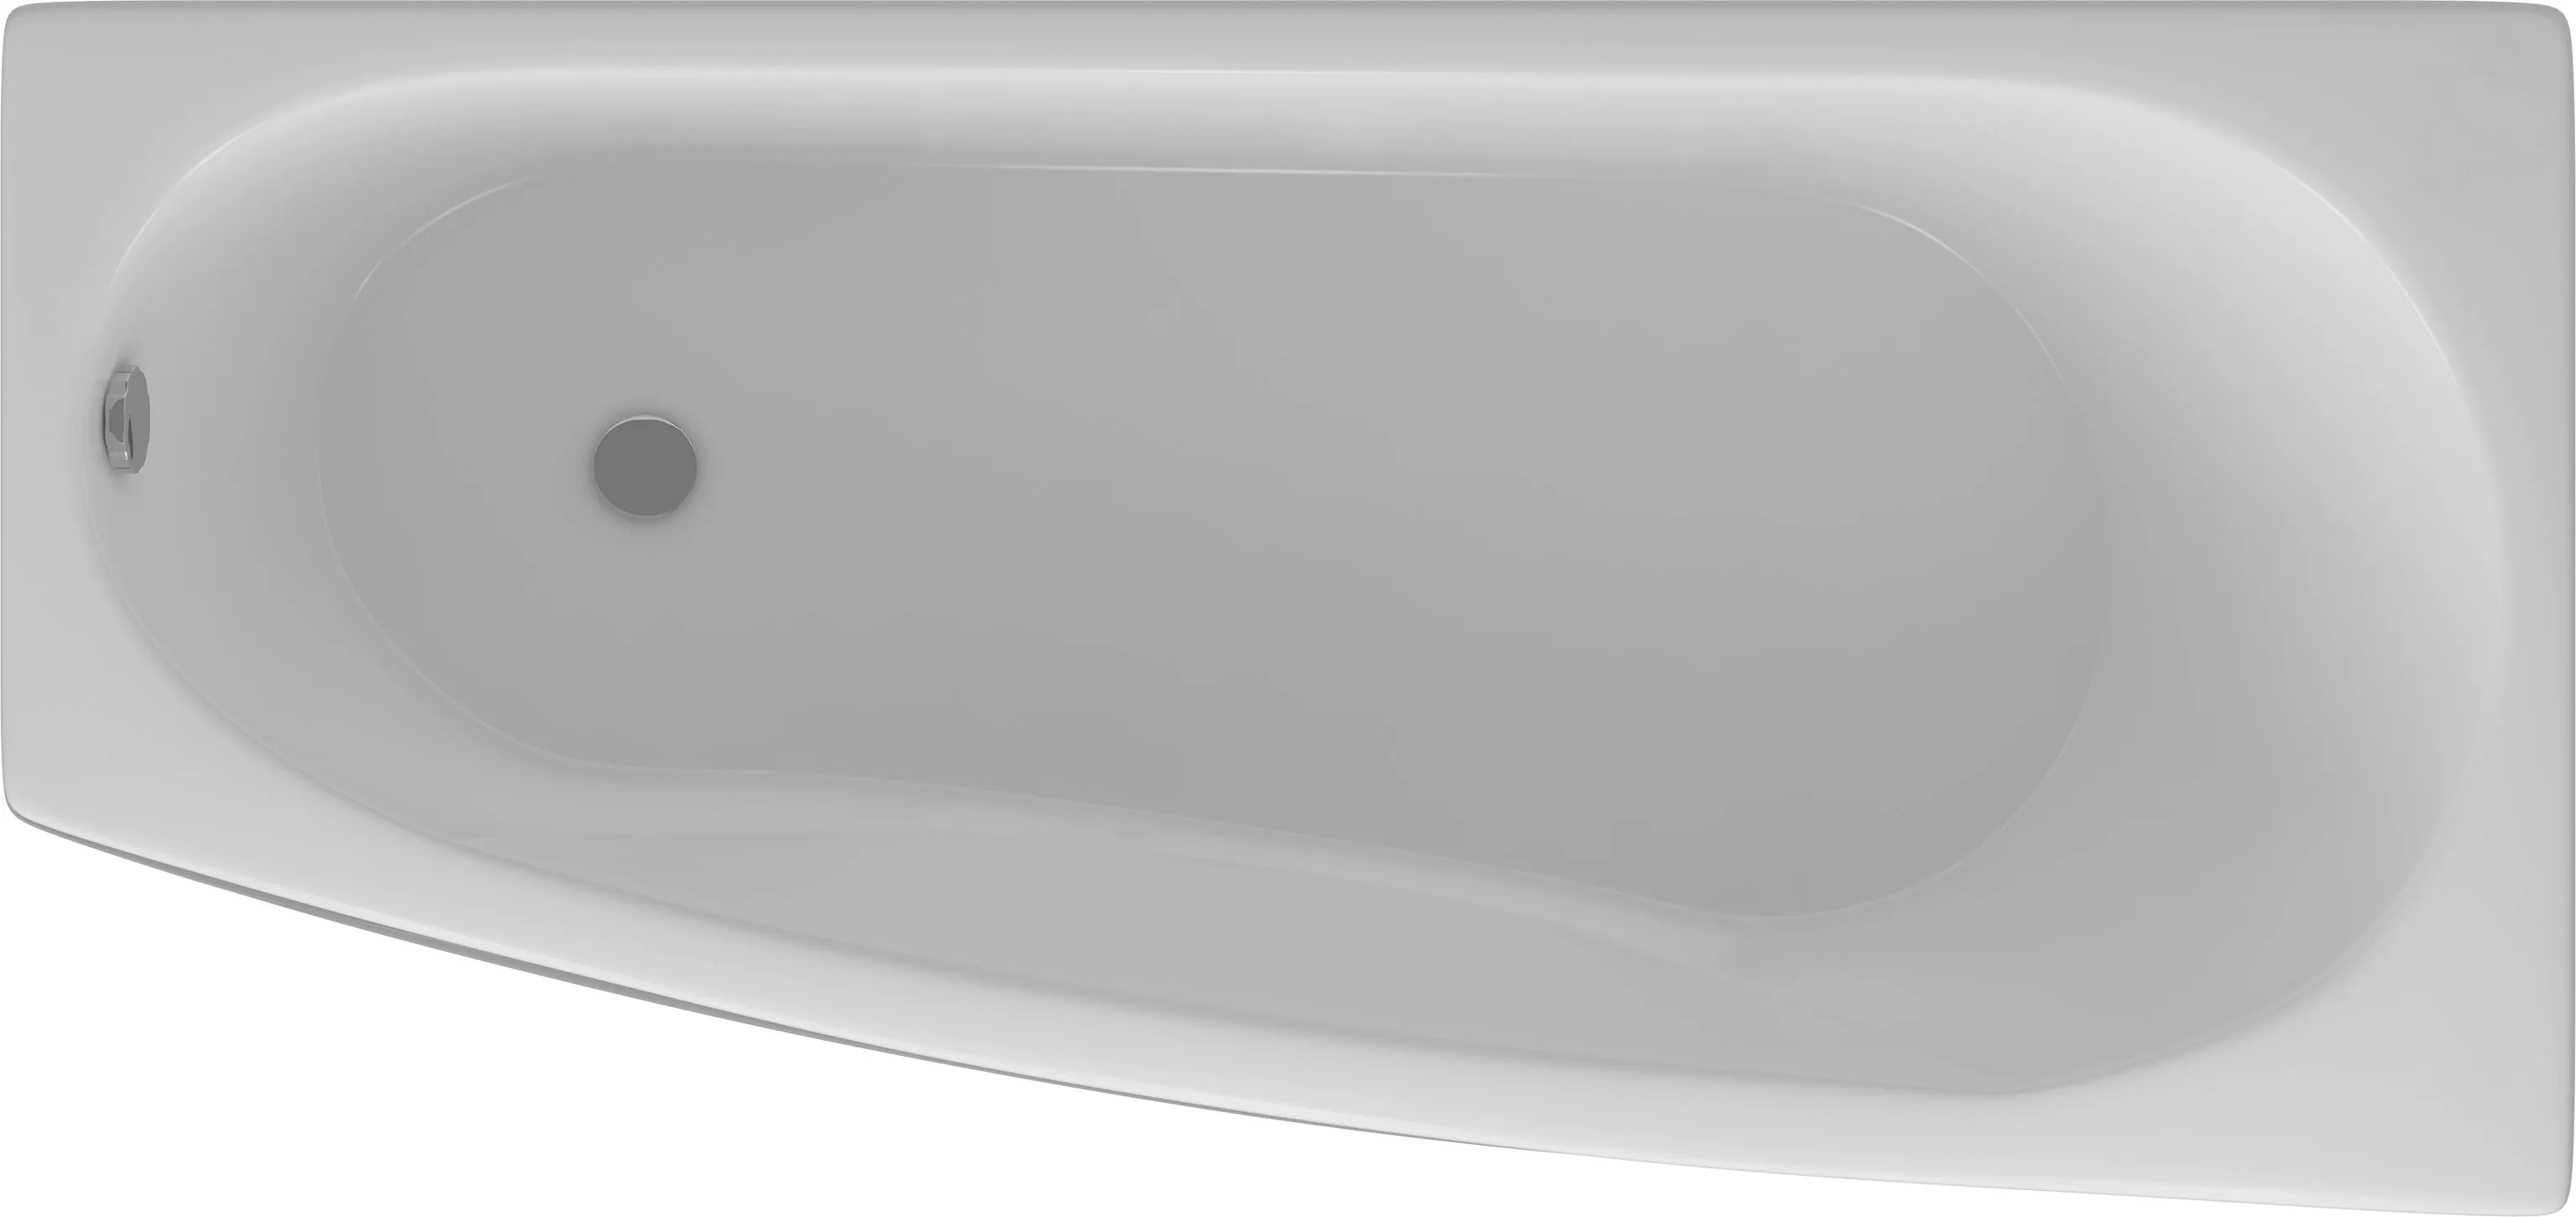 Акриловая ванна Акватек Пандора 160x75 R, цвет белый PAN160-0000054 - фото 1